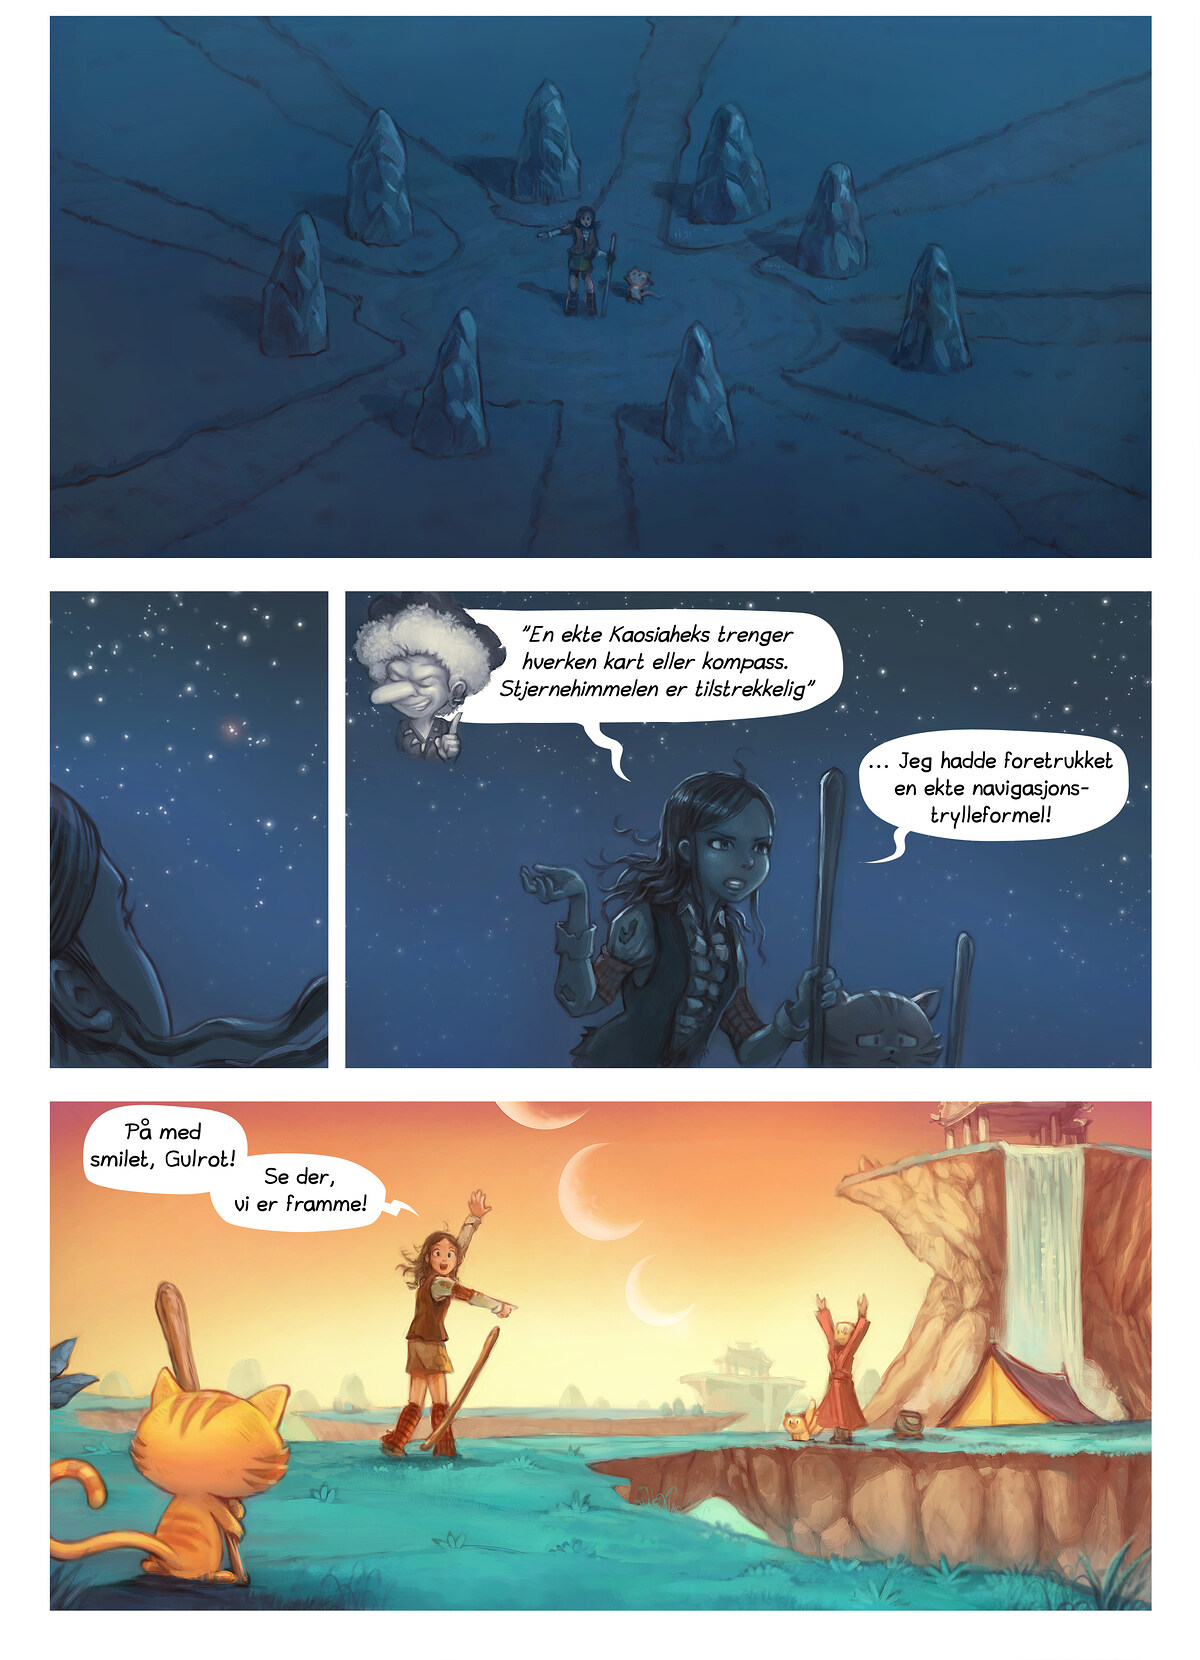 Episode 17: En ny begynnelse, Page 6